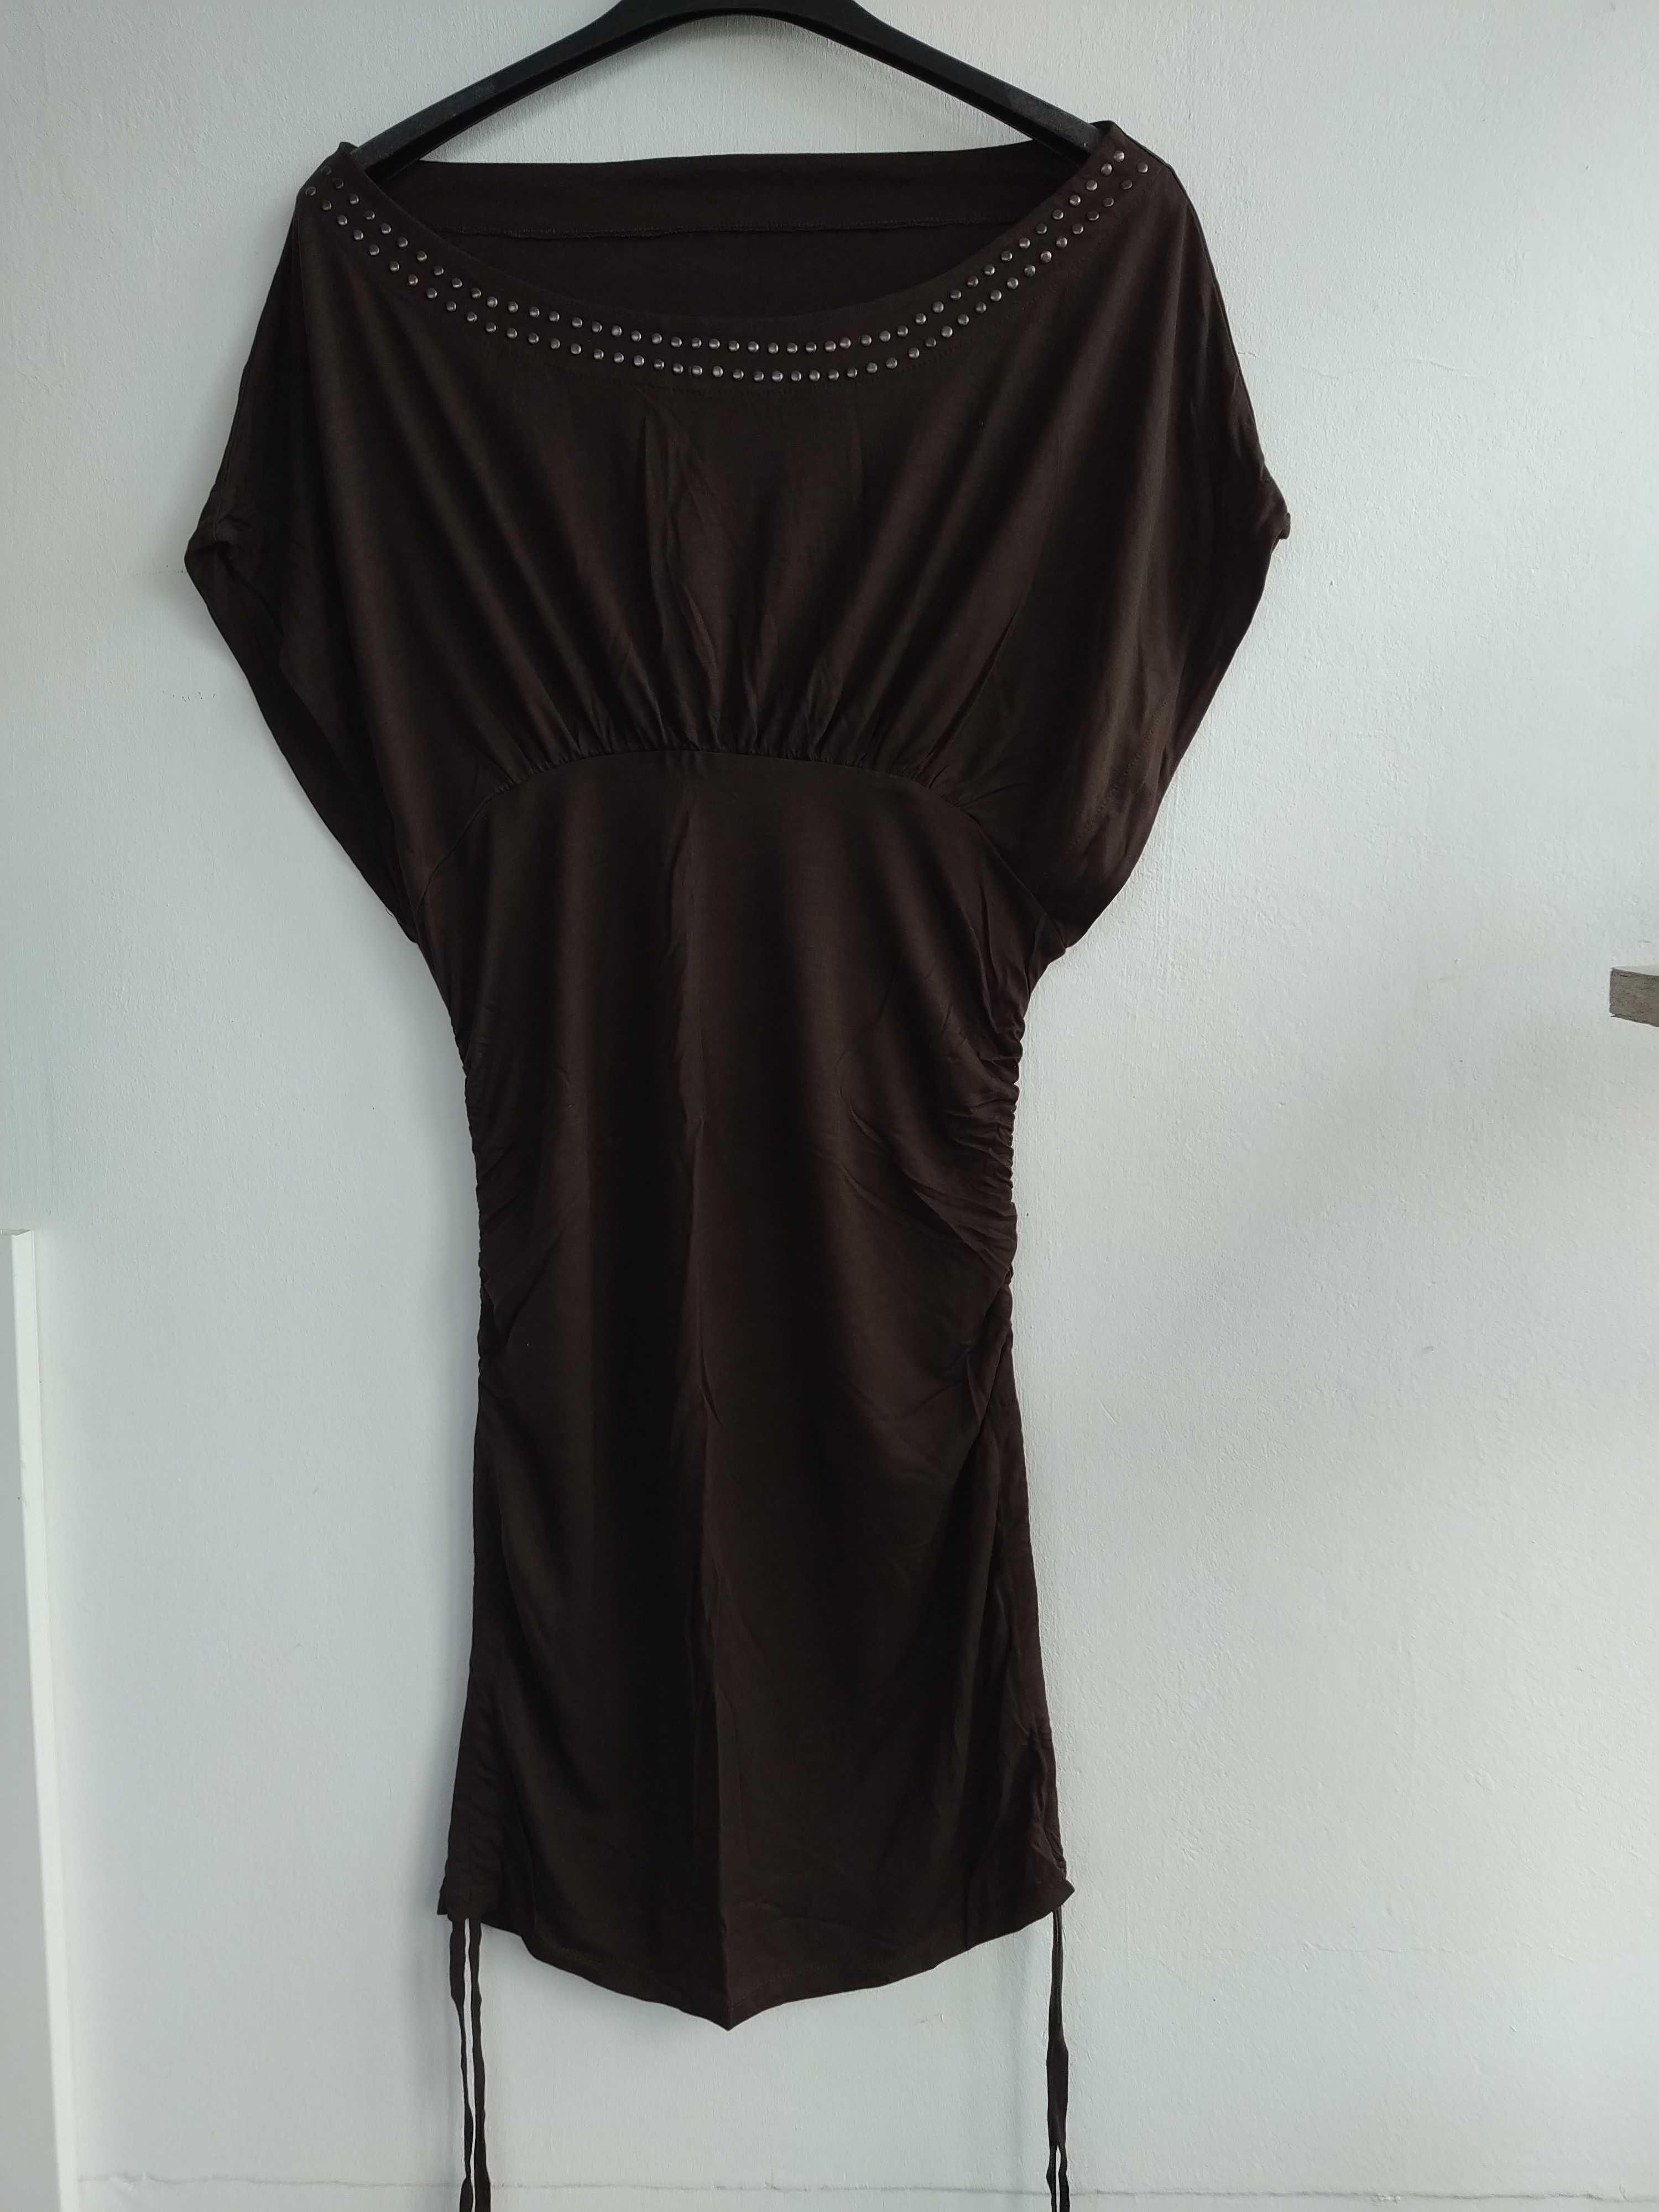 Túnica / vestido castanho com tachas - Tamanho XL